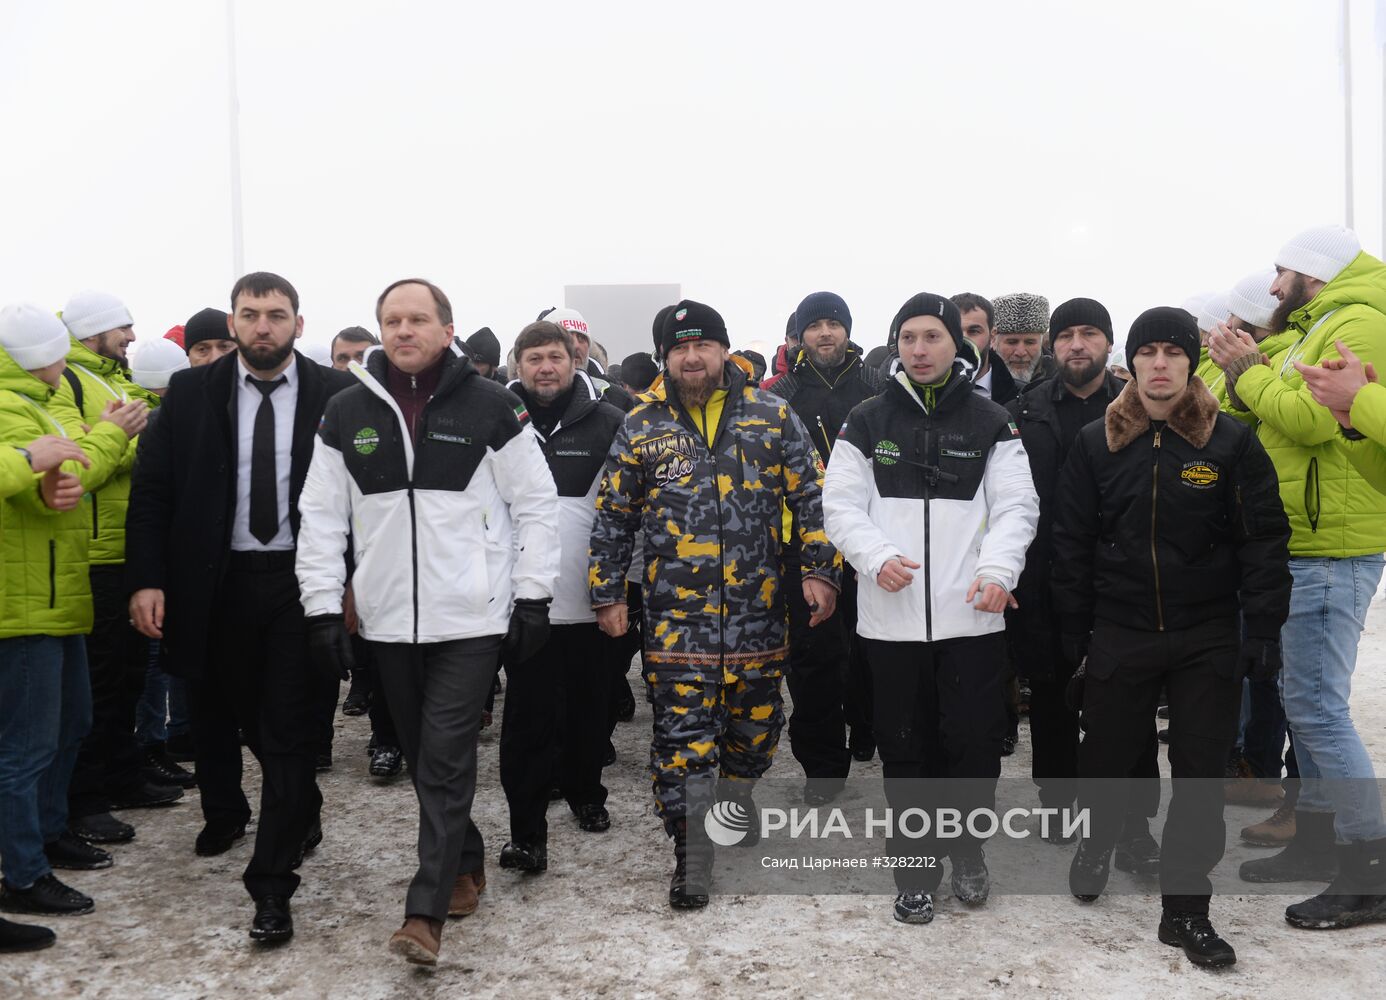 Открытие горнолыжного курорта "Ведучи" в Чечне